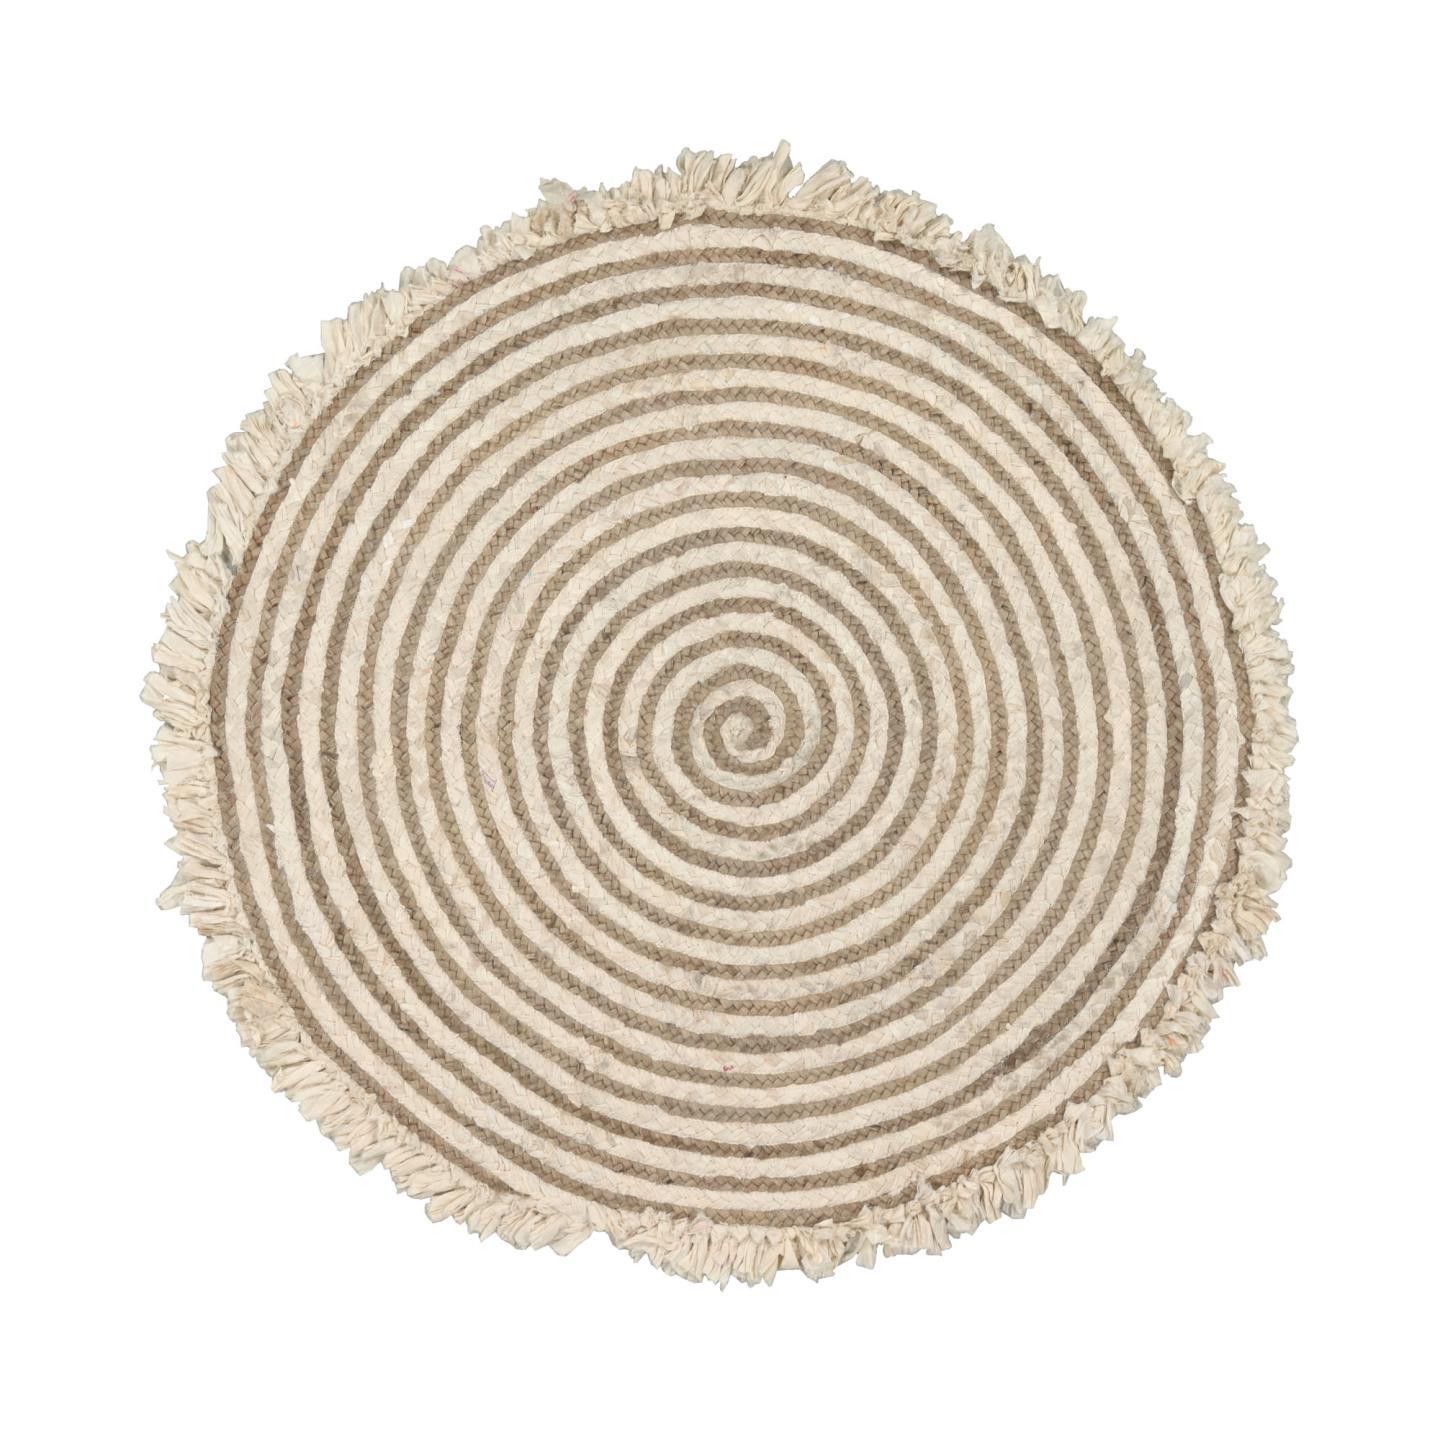 LAFORMA Gisel gulvtæppe, rund - natur jute og bomuld (Ø120)